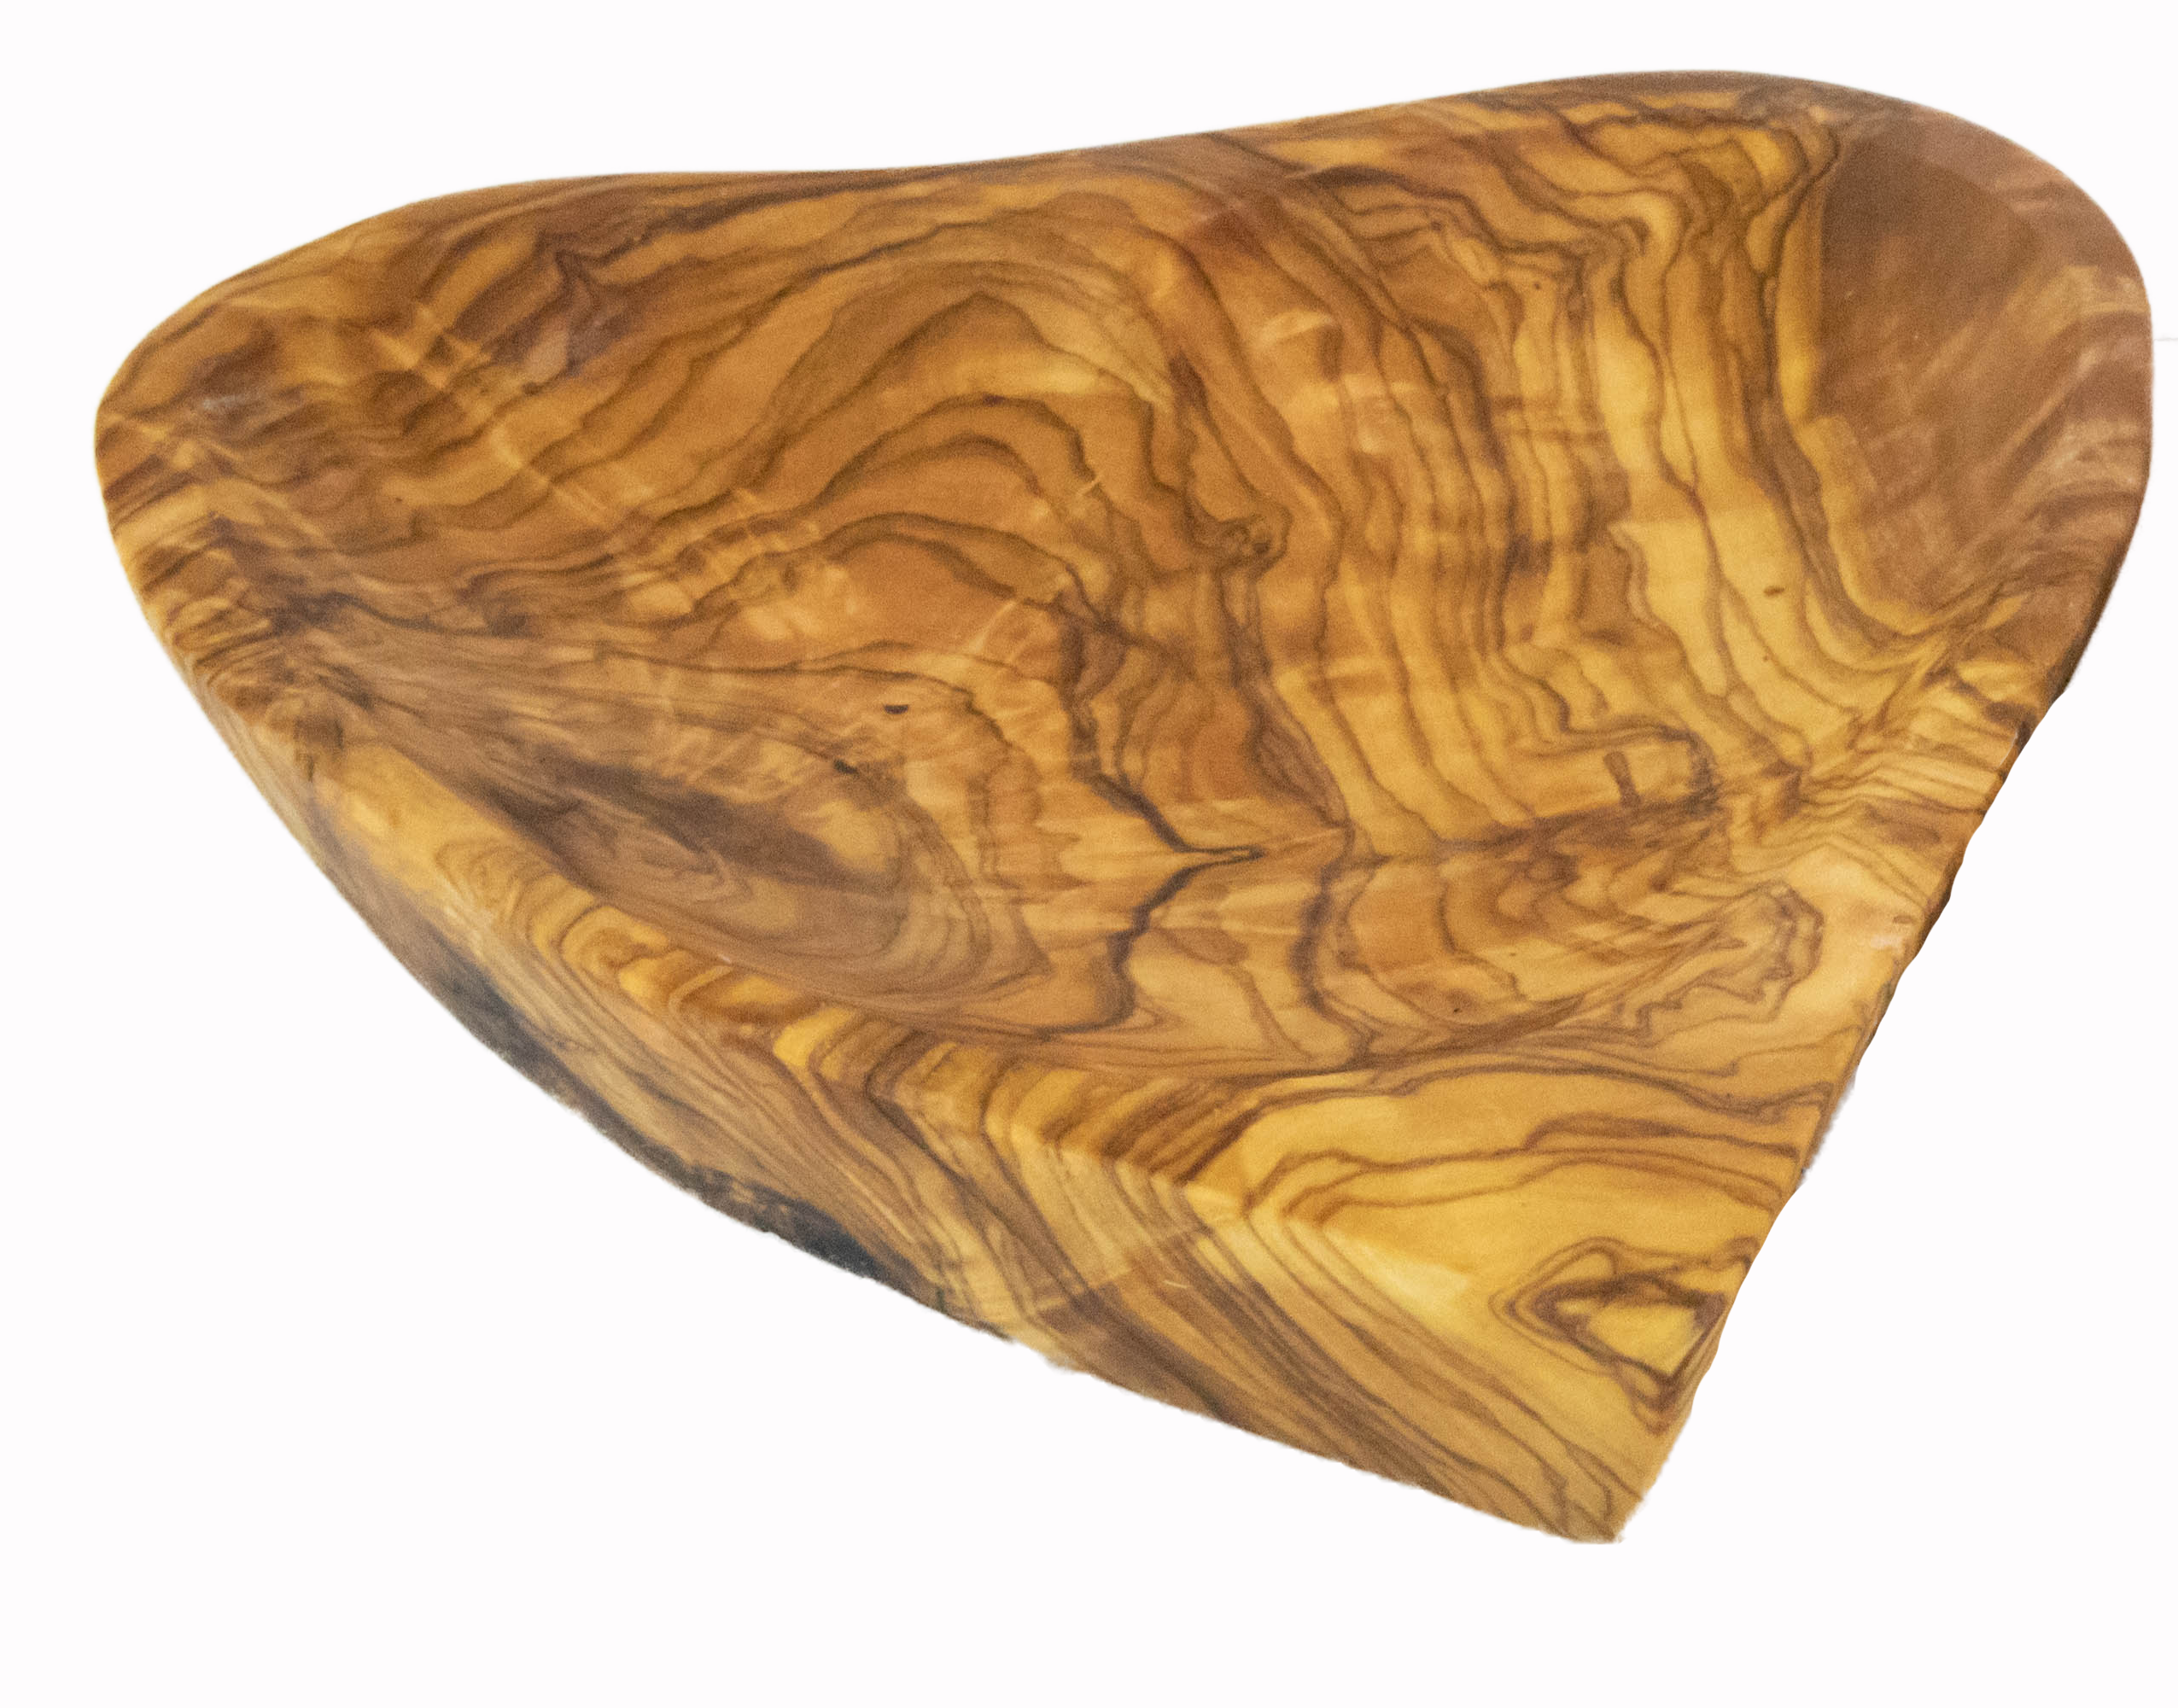 Olive wood serving platter in heart shape.